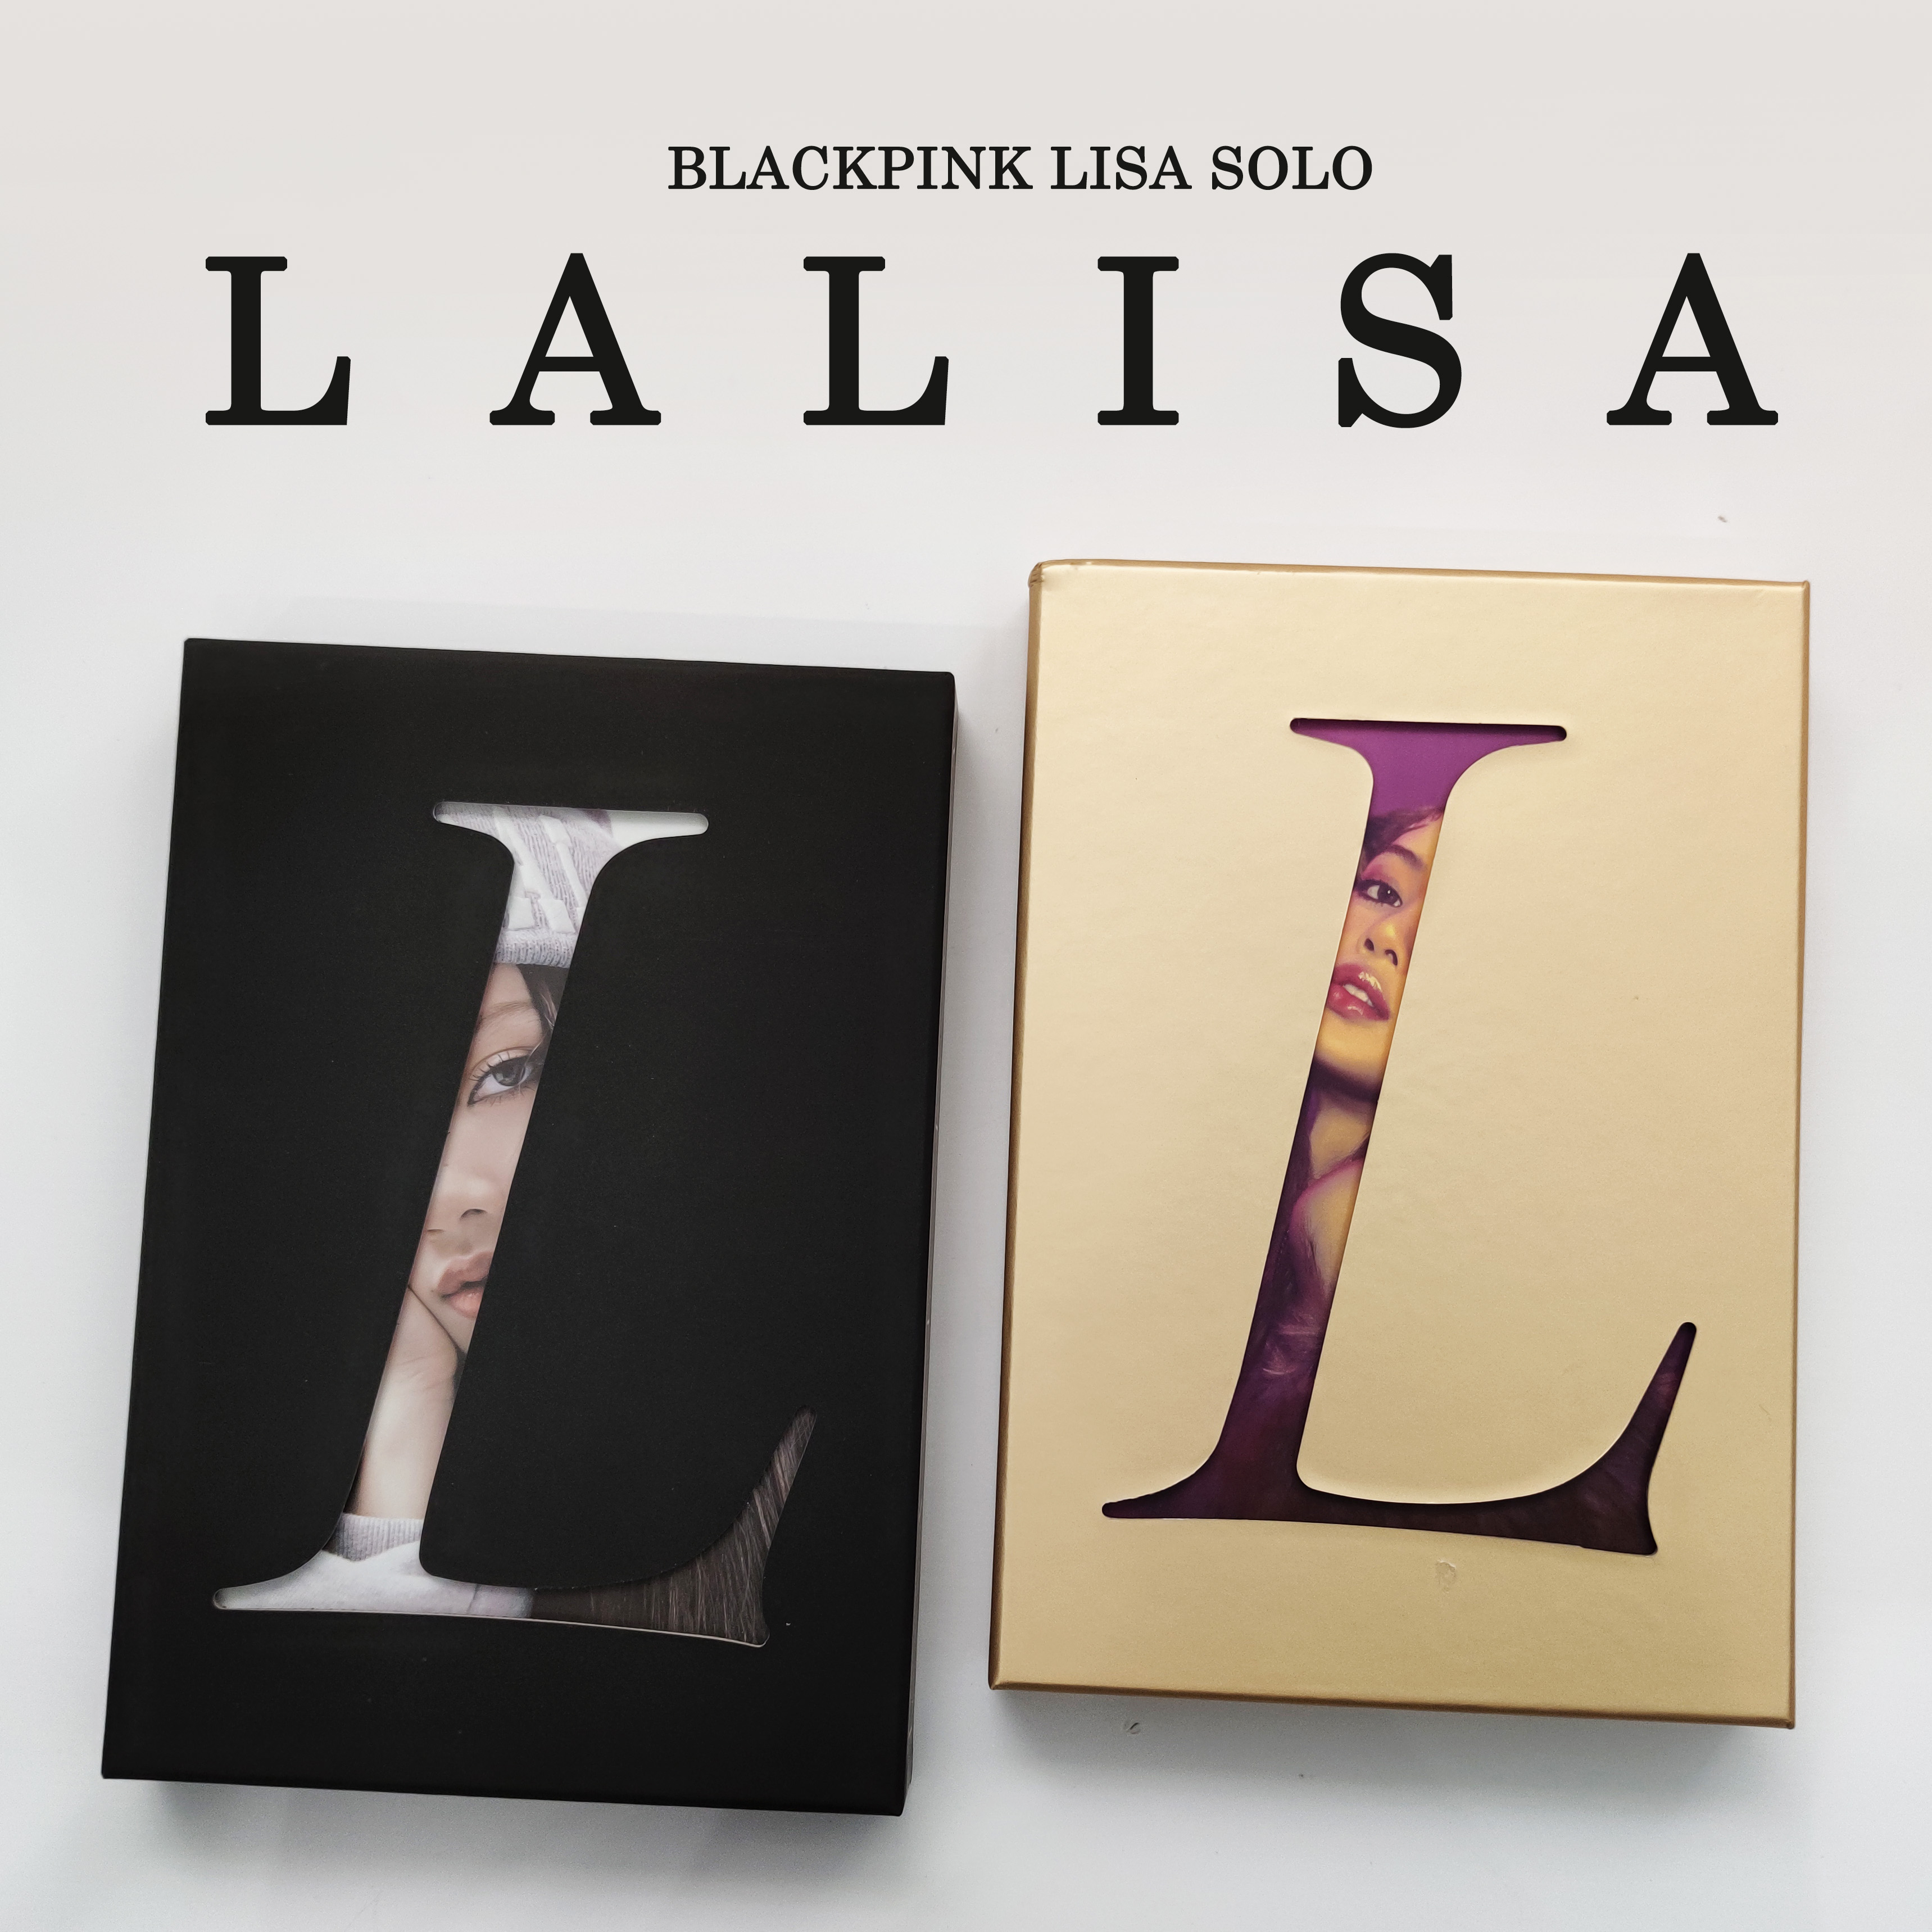 现货 BLACKPINK 粉墨 LISA solo专辑 LALISA CD+小卡写真海报周边